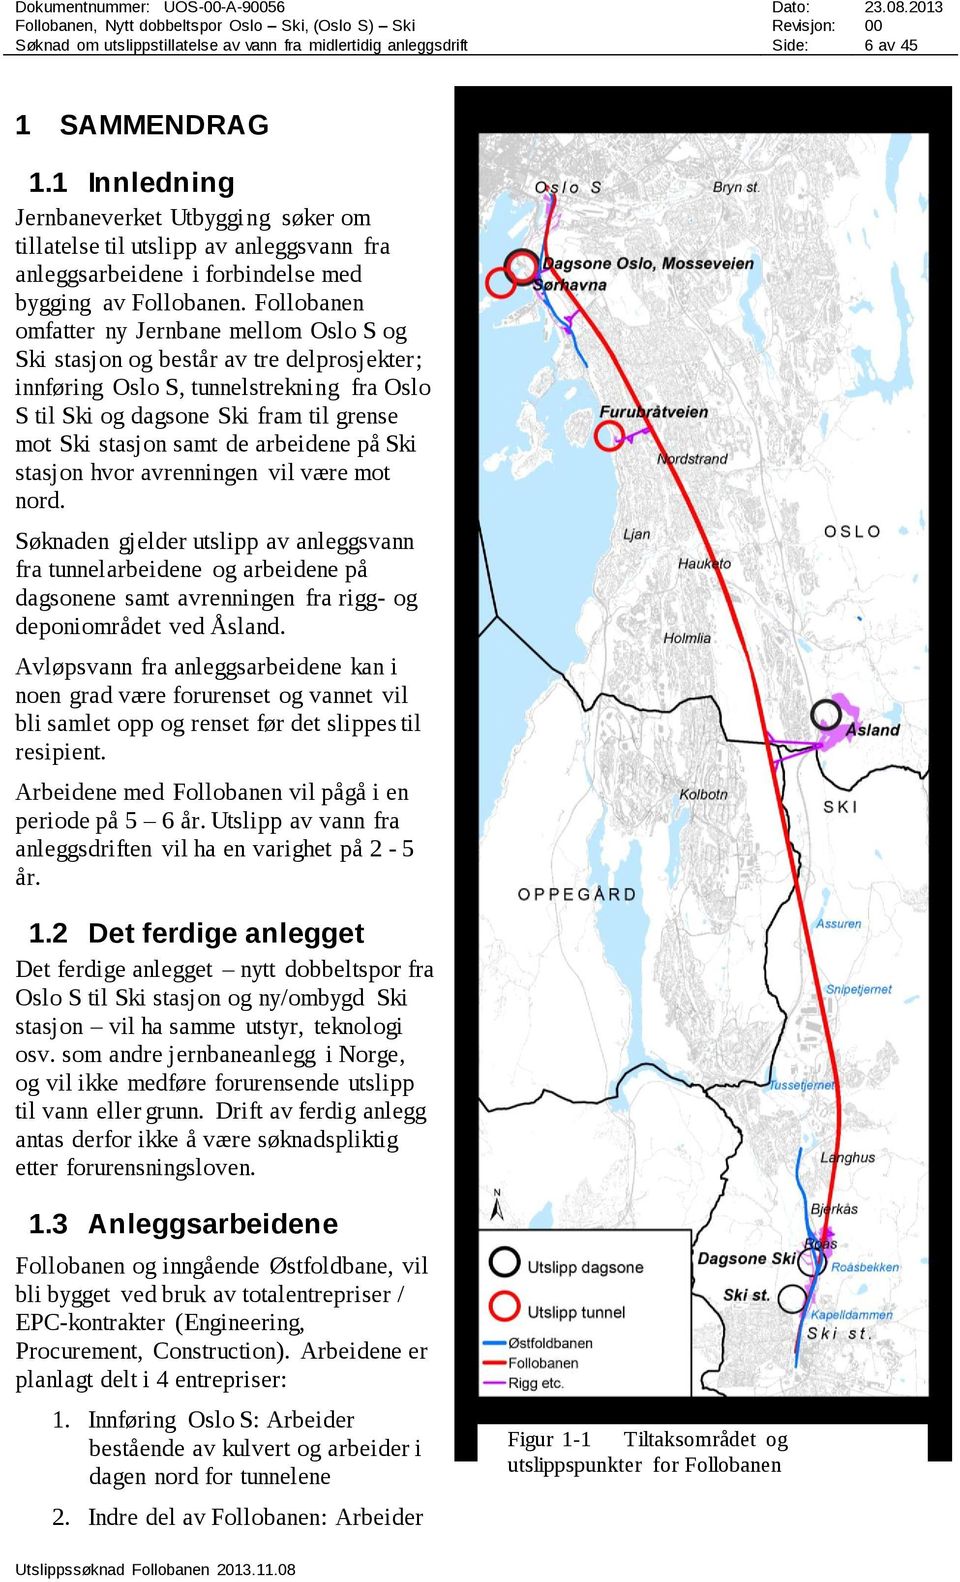 Follobanen omfatter ny Jernbane mellom Oslo S og Ski stasjon og består av tre delprosjekter; innføring Oslo S, tunnelstrekning fra Oslo S til Ski og dagsone Ski fram til grense mot Ski stasjon samt